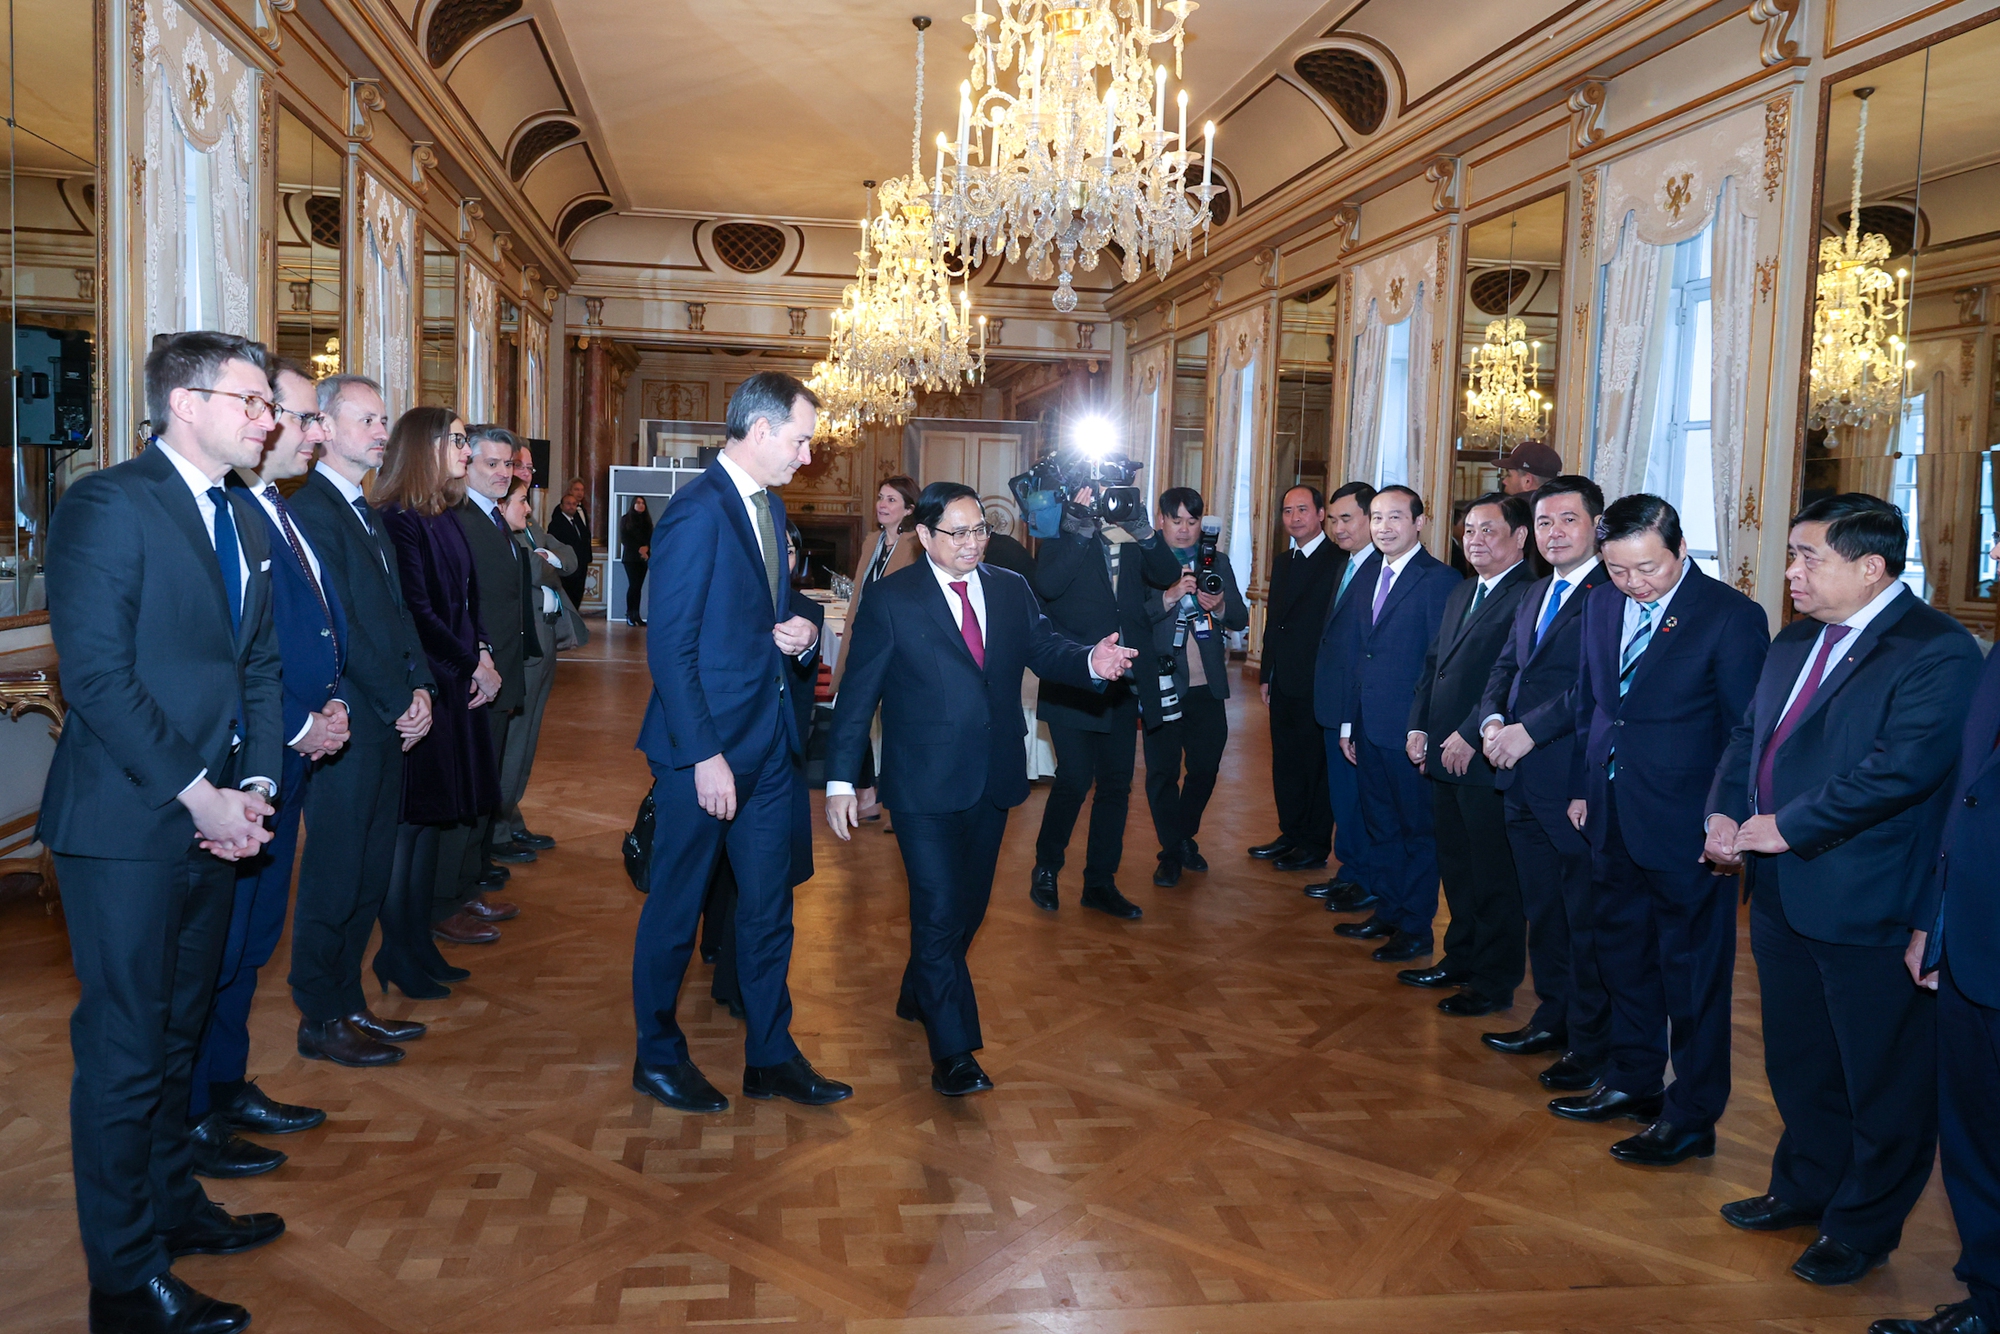 Chùm ảnh: Lễ đón chính thức Thủ tướng Phạm Minh Chính thăm Vương quốc Bỉ - Ảnh 5.